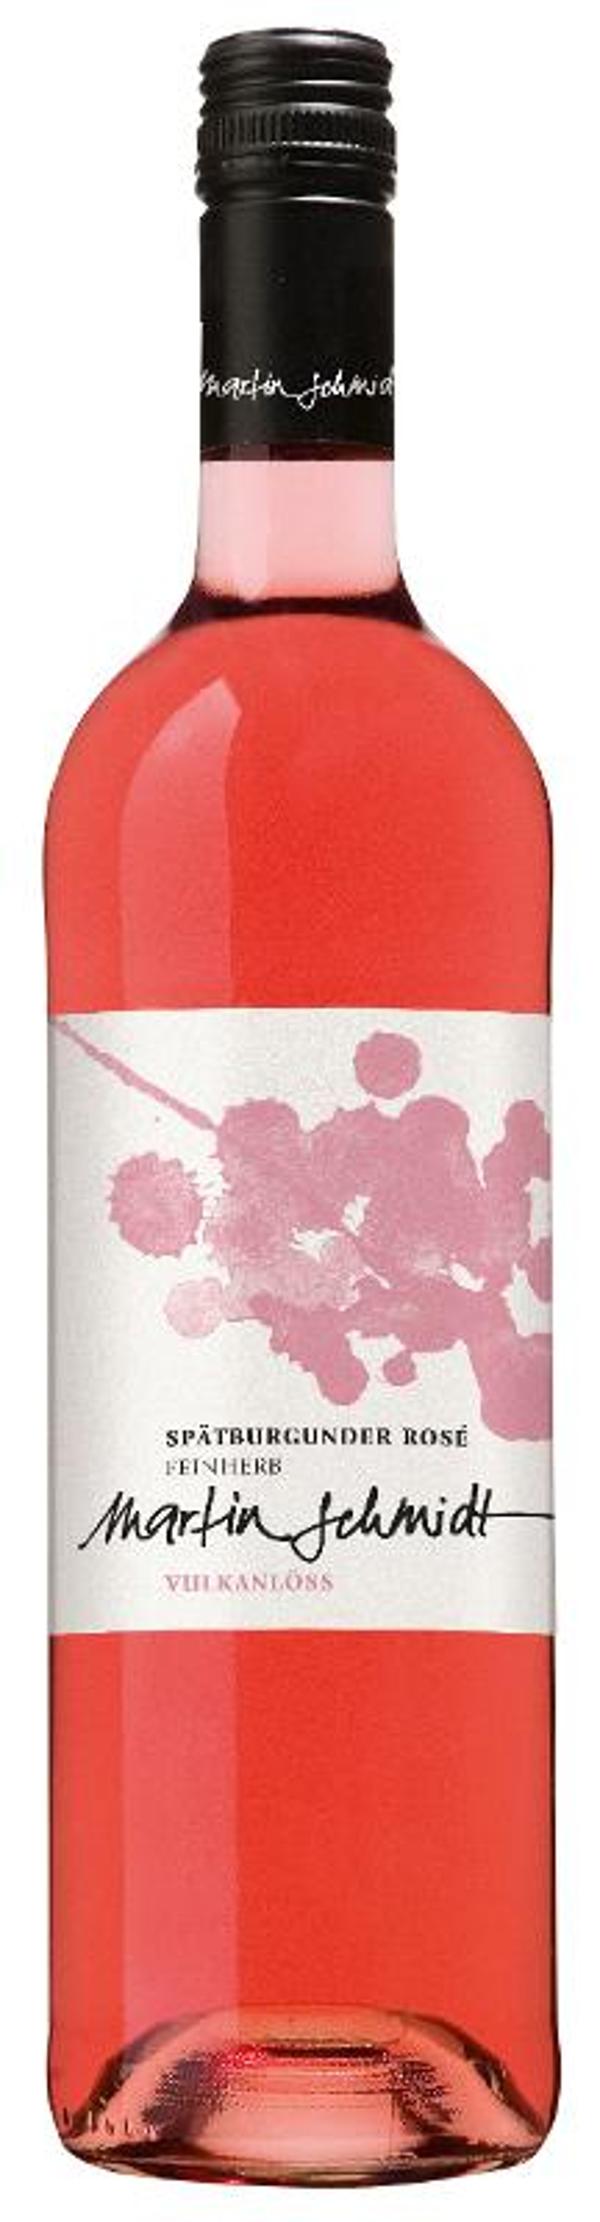 Produktfoto zu Vulkanlöss, rosé